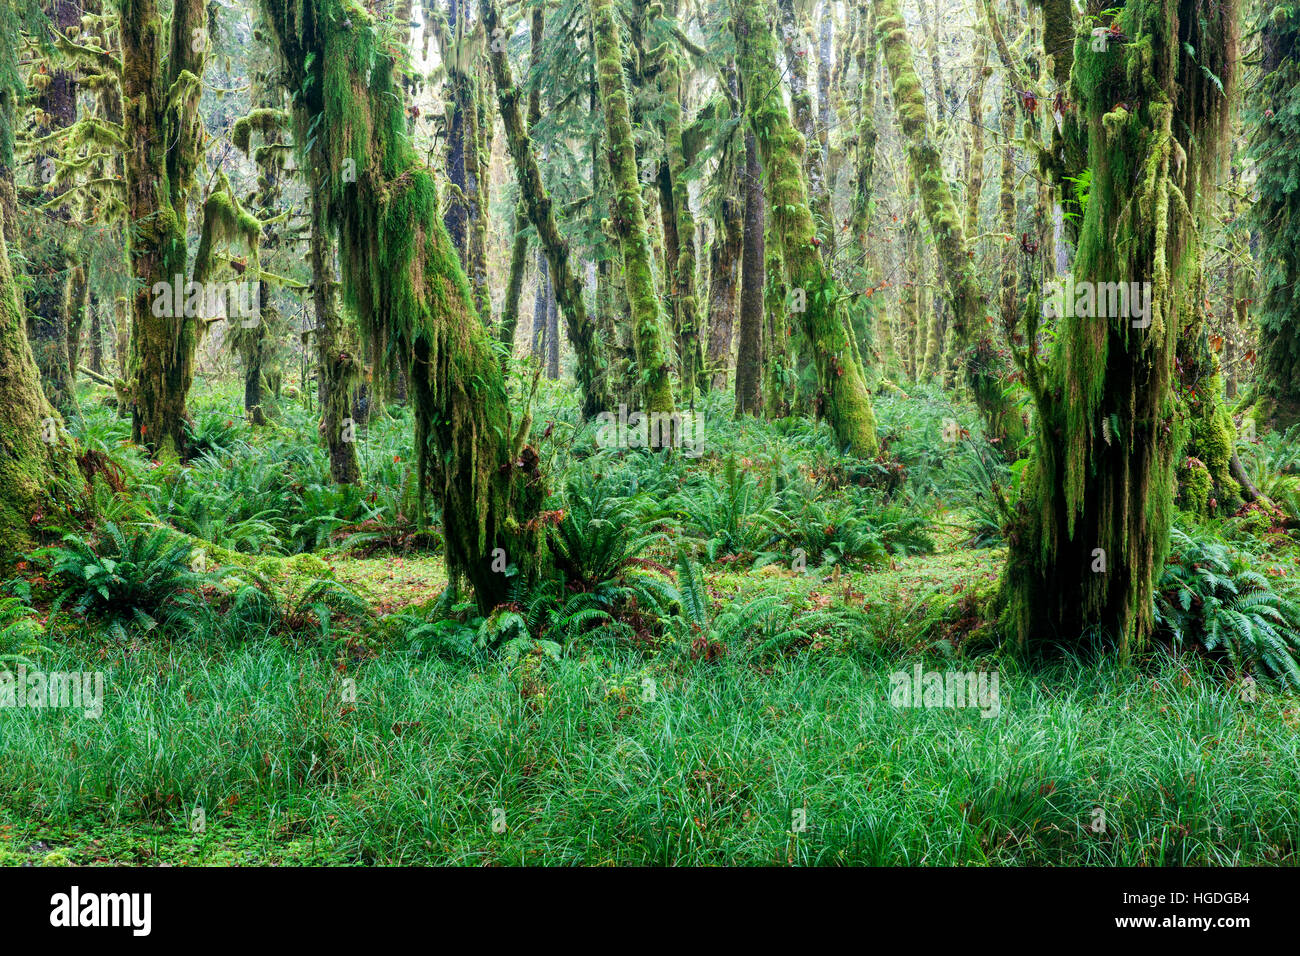 WA11983-00...WASHINGTON - forêt tropicale le long de la clairière de l'érable dans la boucle de la forêt Quinault River Valley of Olympic National Park. Banque D'Images